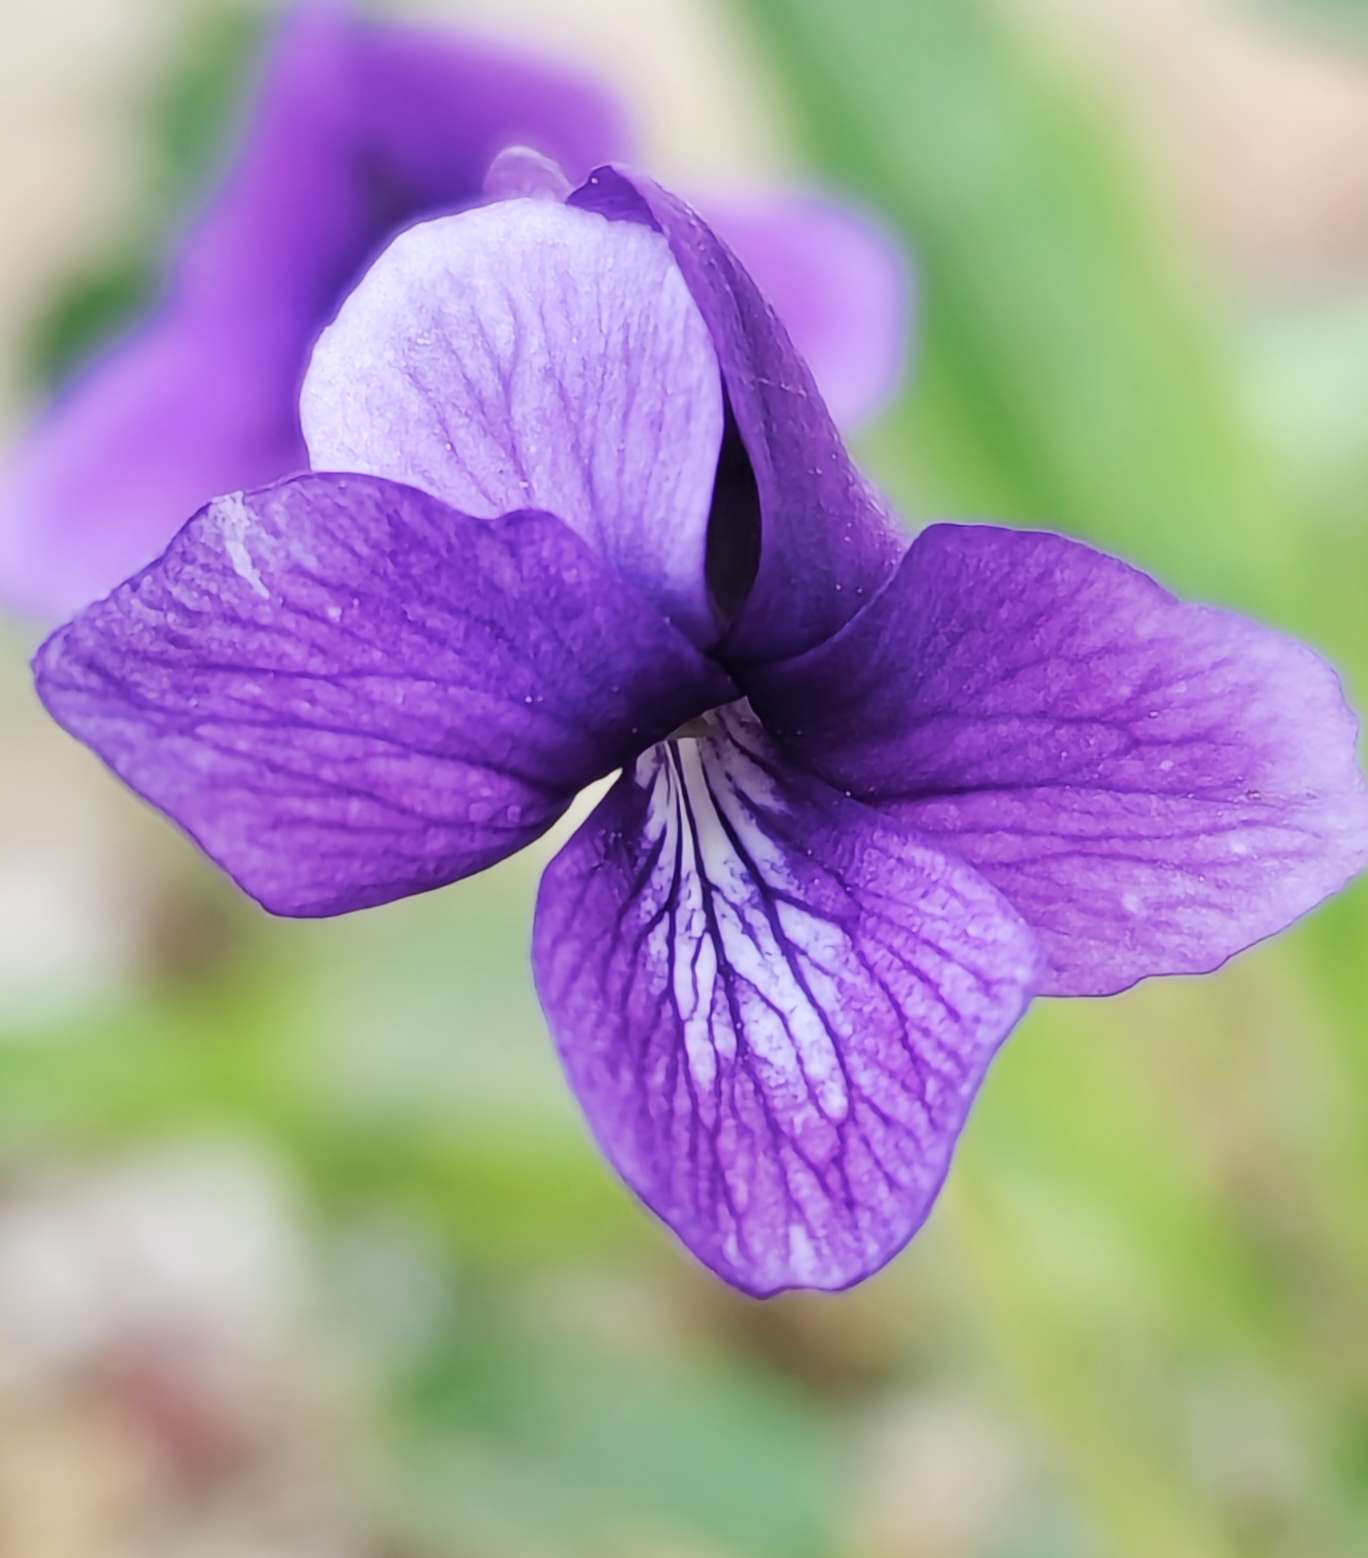 钉入泥土的地丁开出神秘紫色花朵